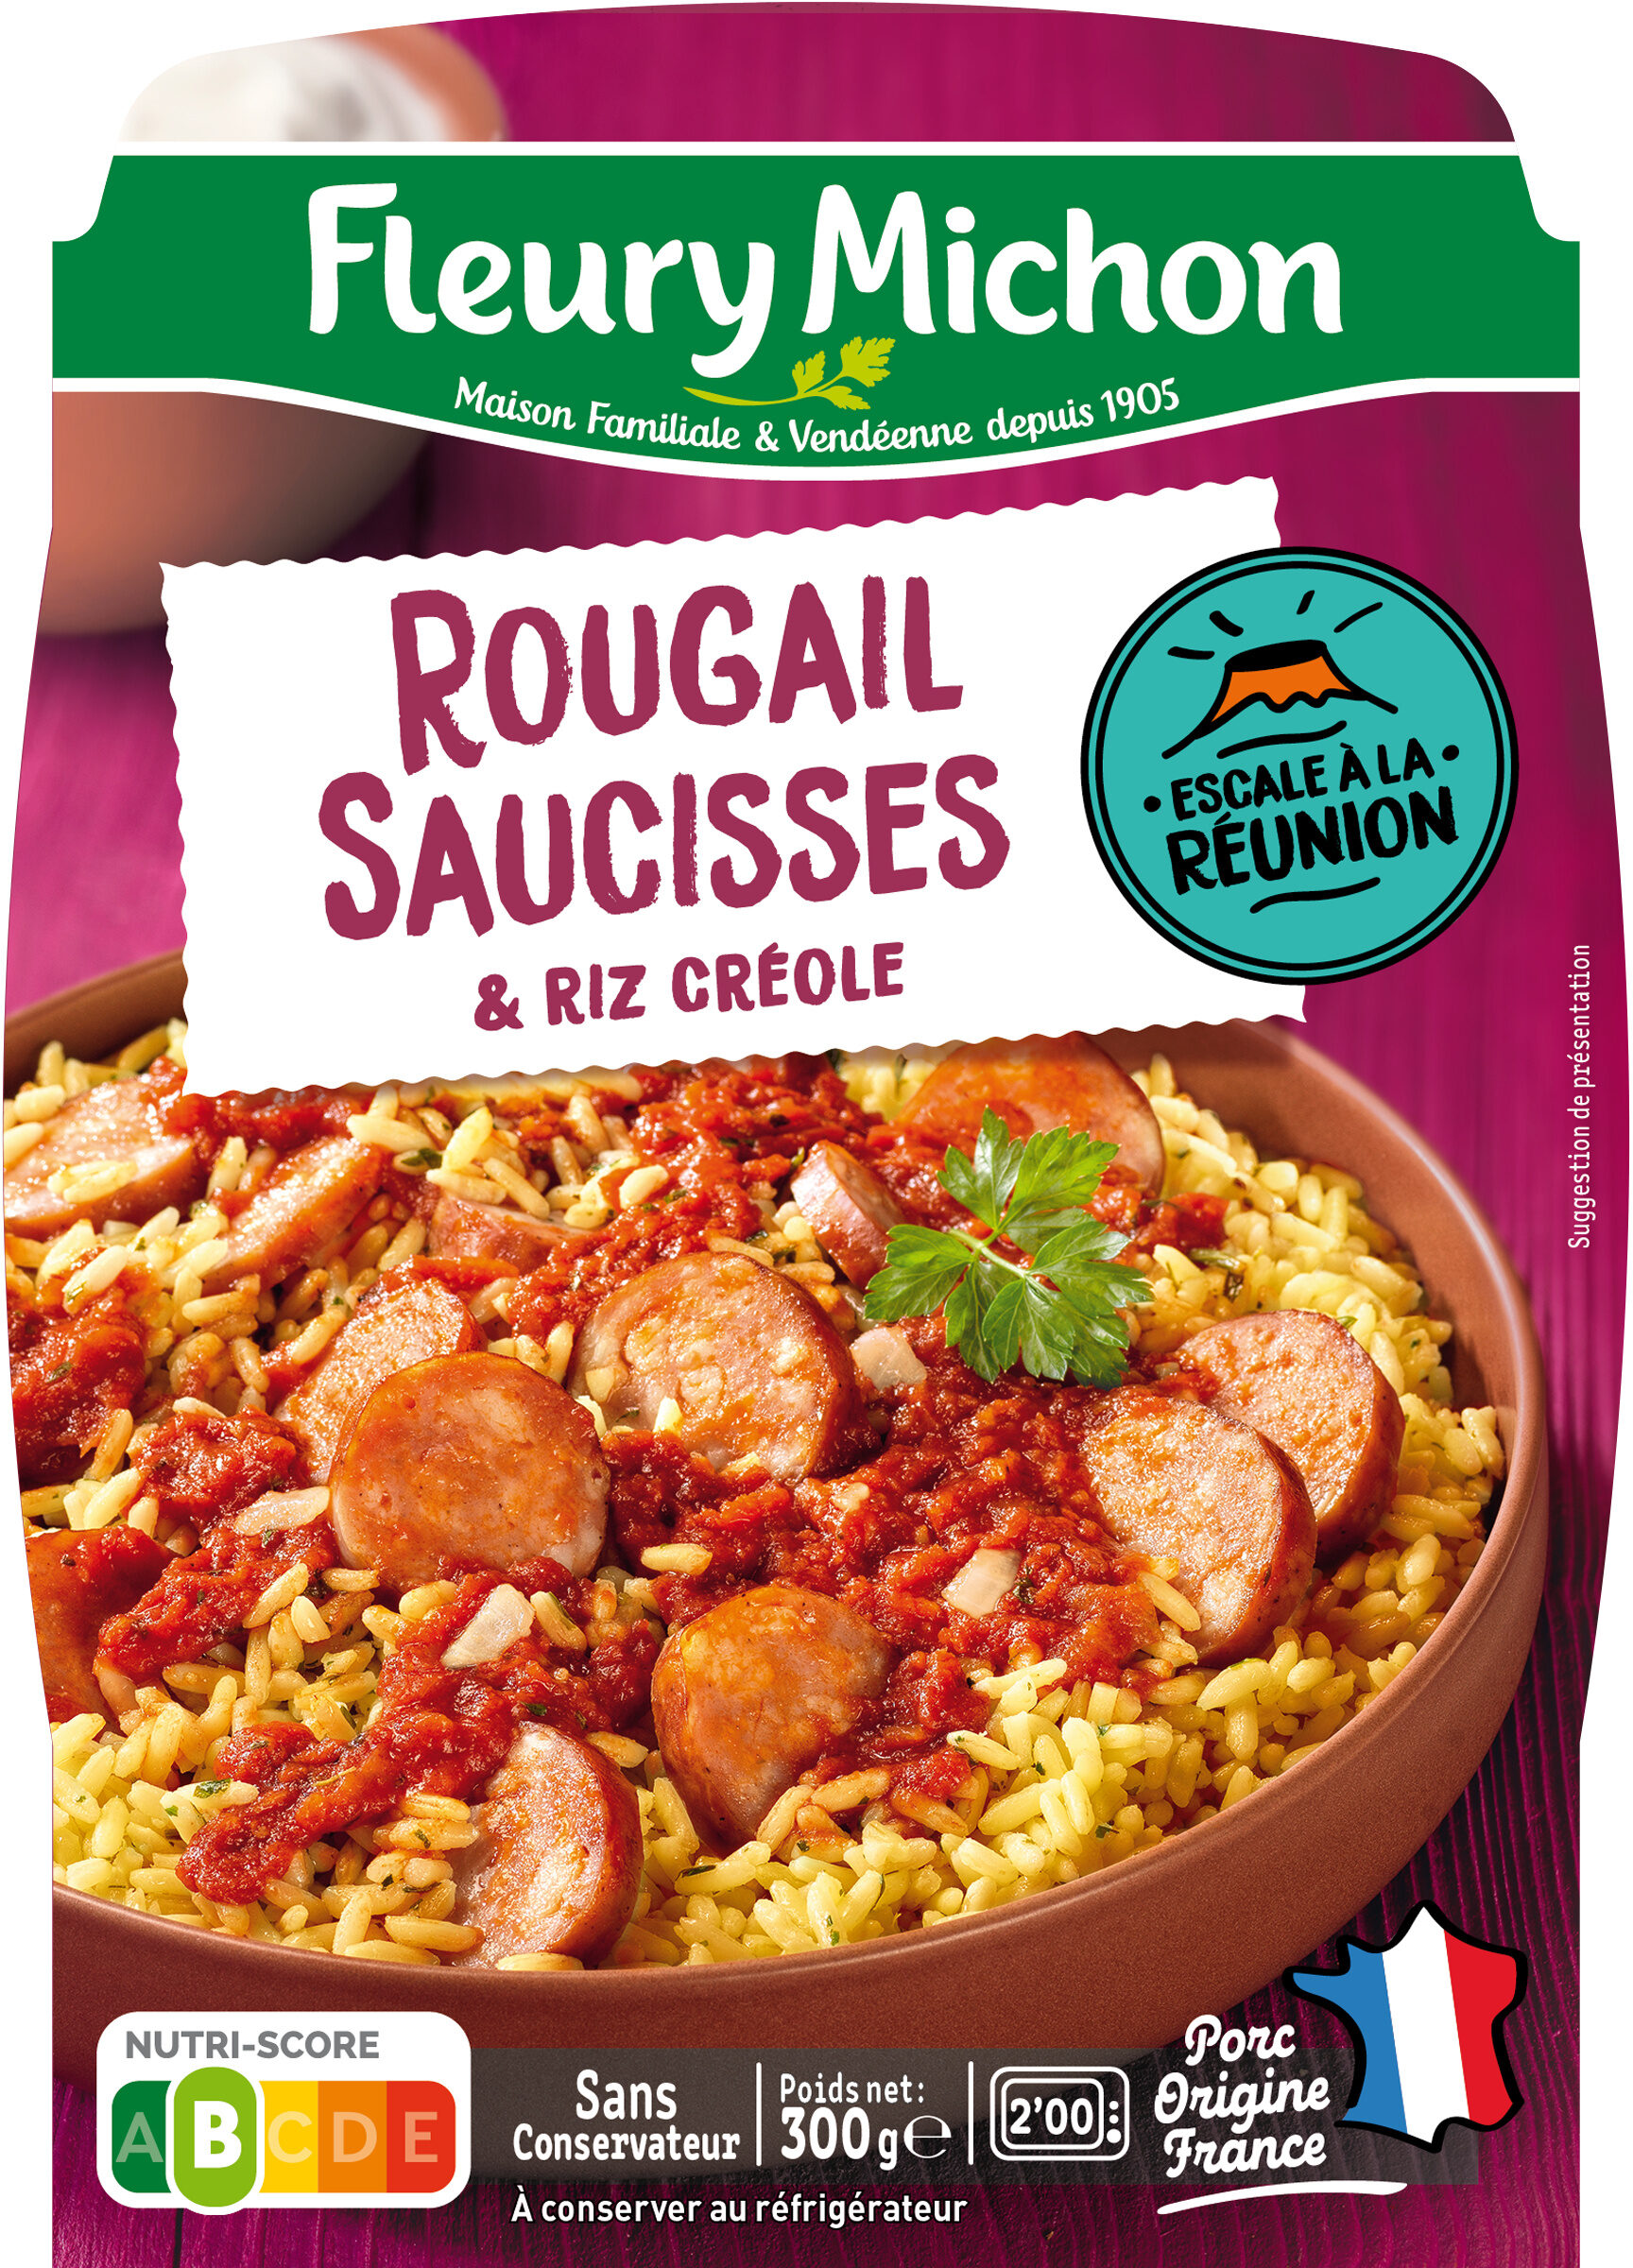 Le Rougail Saucisse et son riz créole - Produit